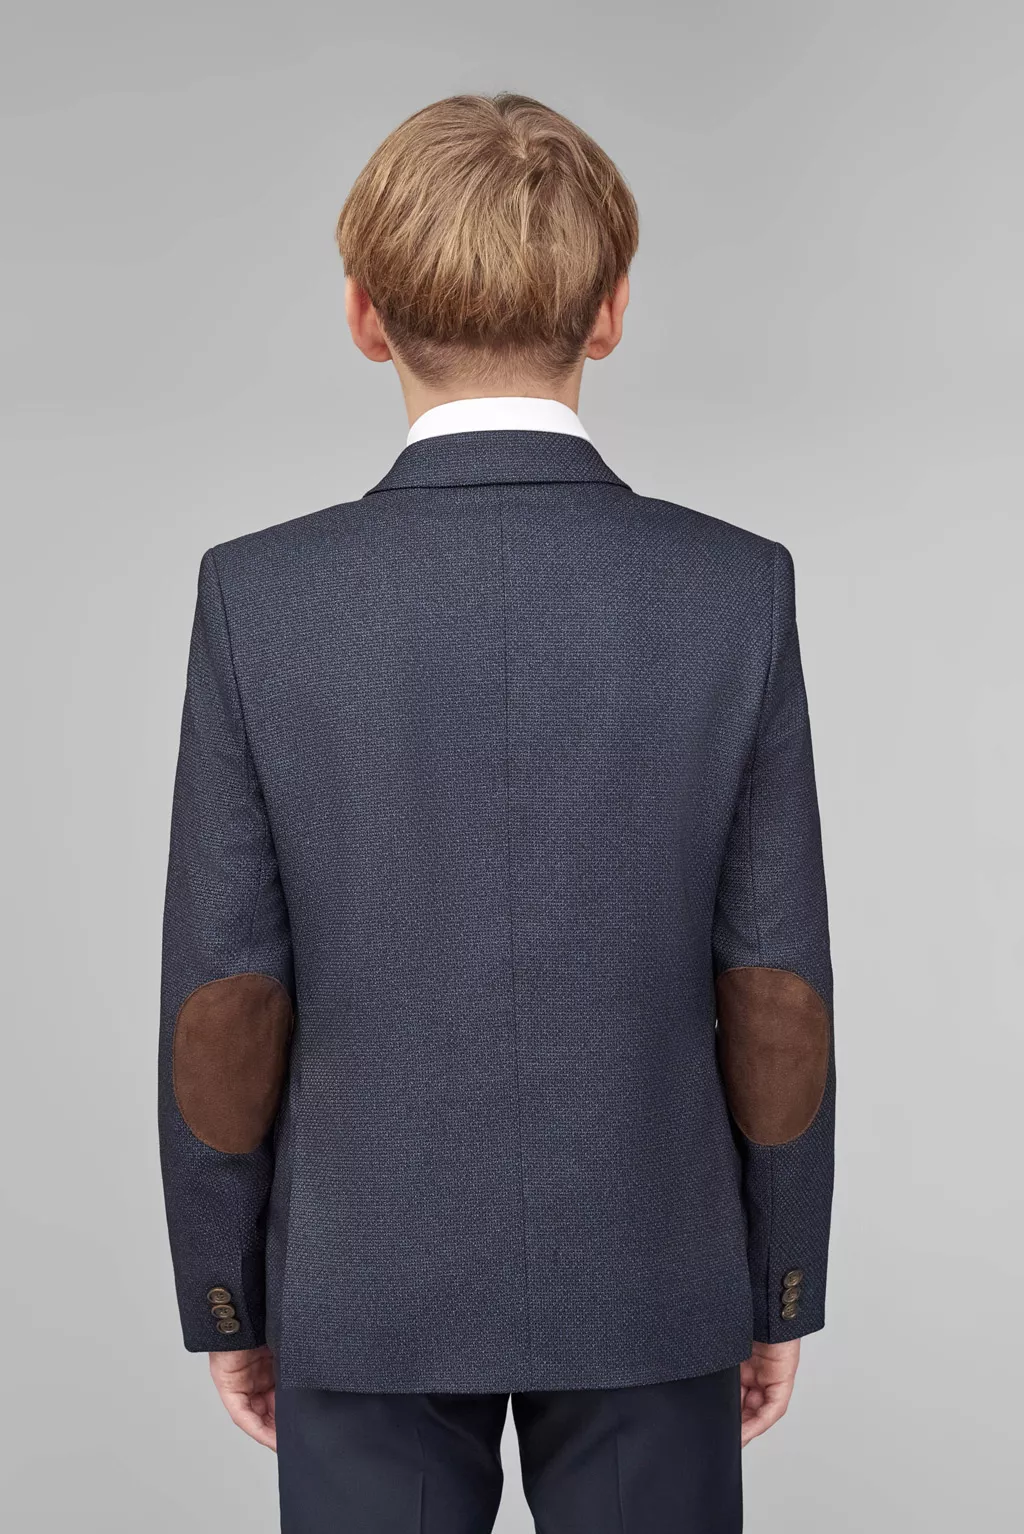 Пиджак для мальчика старшая школа